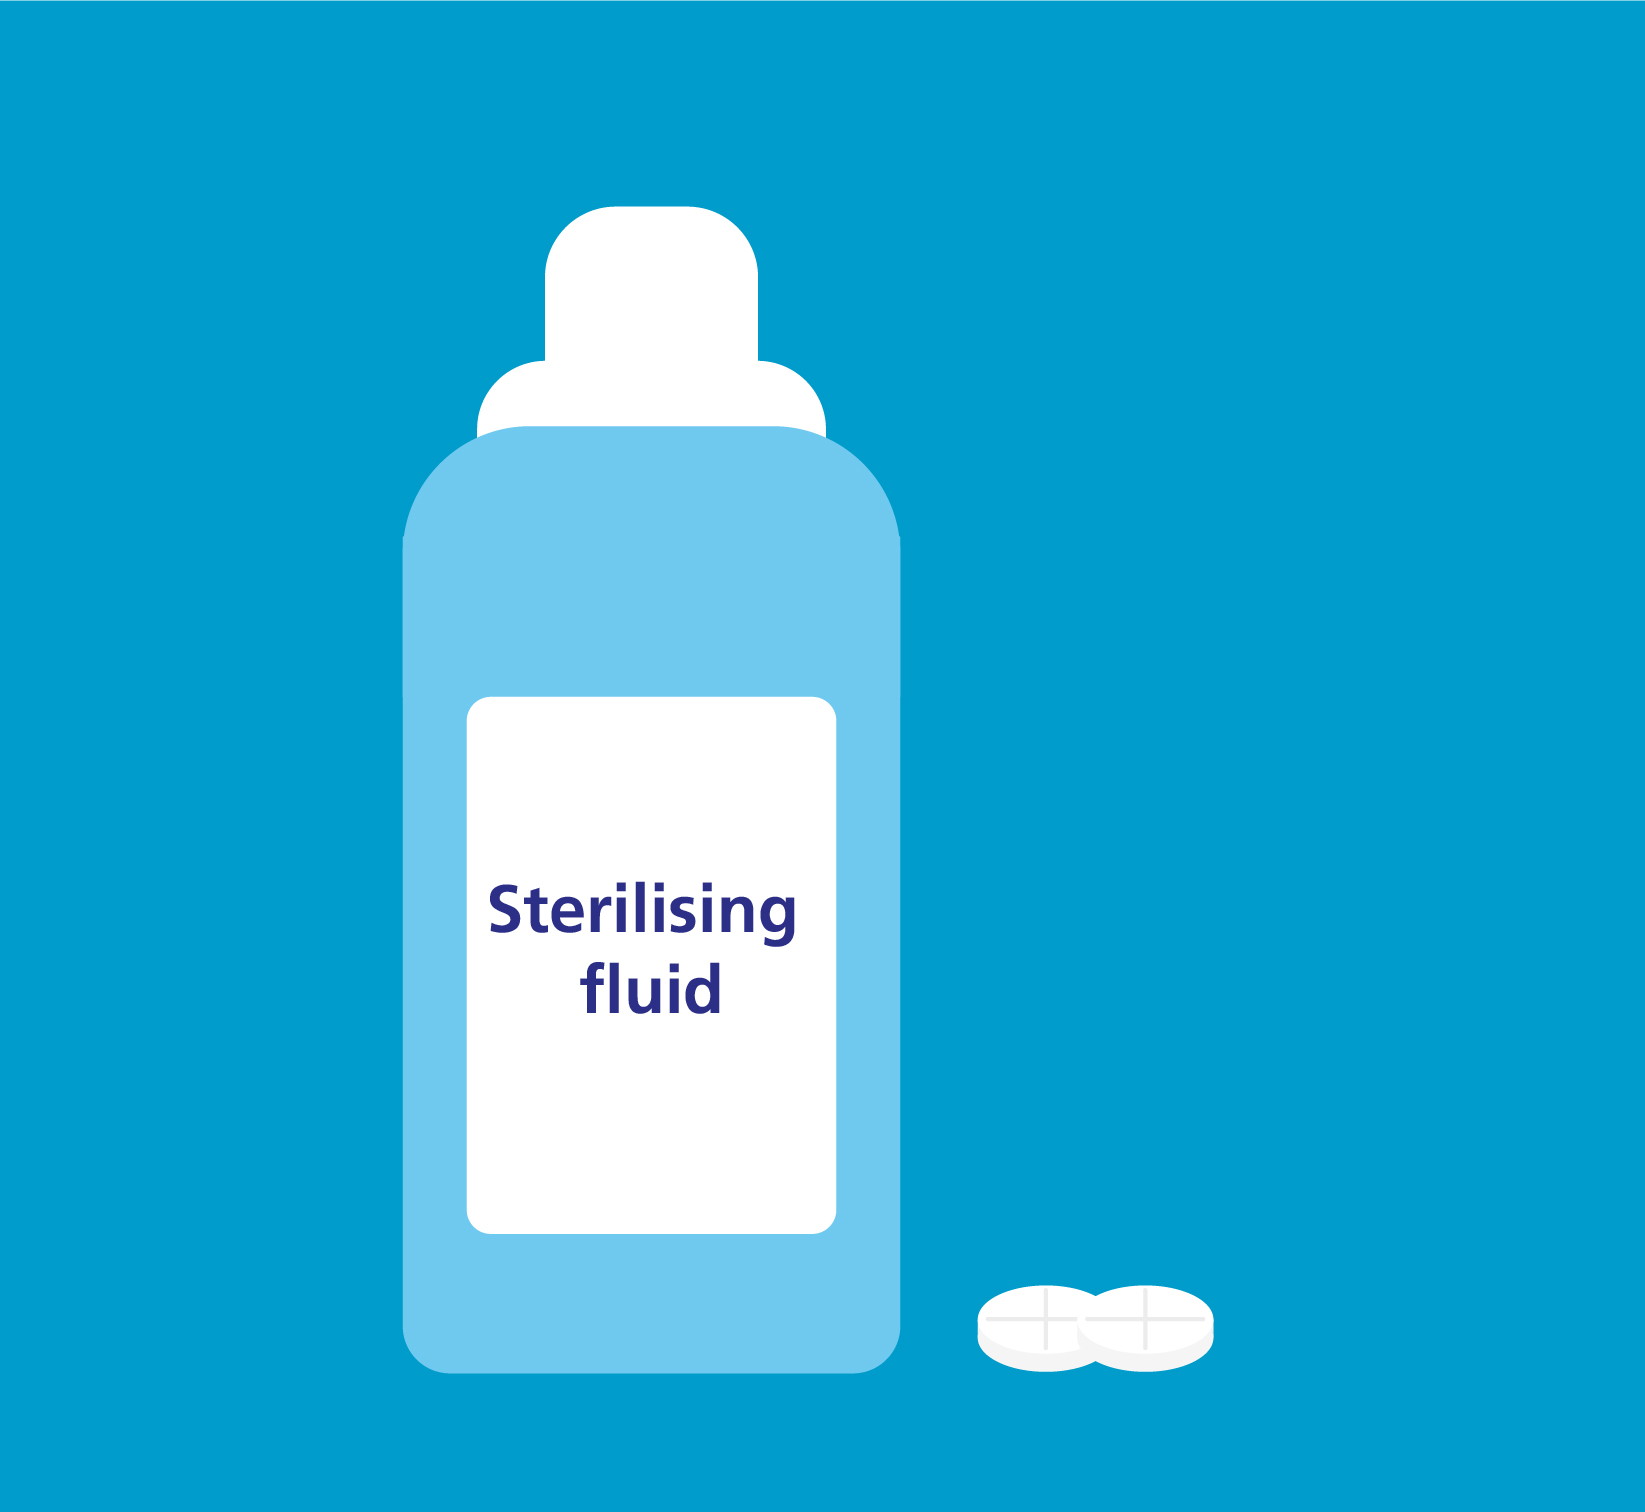 Illustration of sterilising fluid and sterilising tablets